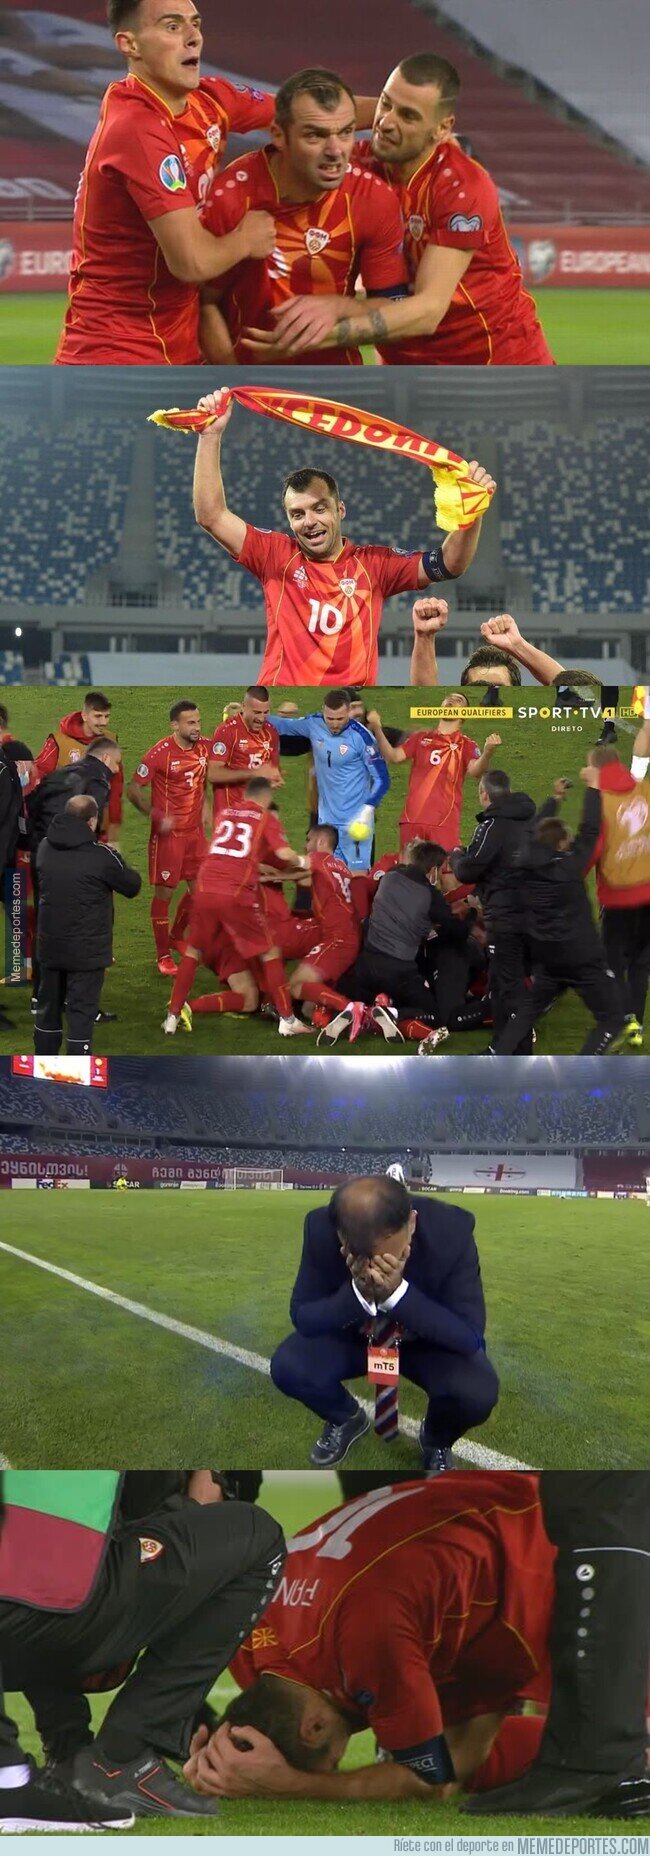 1120315 - El mítico Goran Pandev anotó el gol que metió a Macedonia a la Euro. Le ganó el llanto